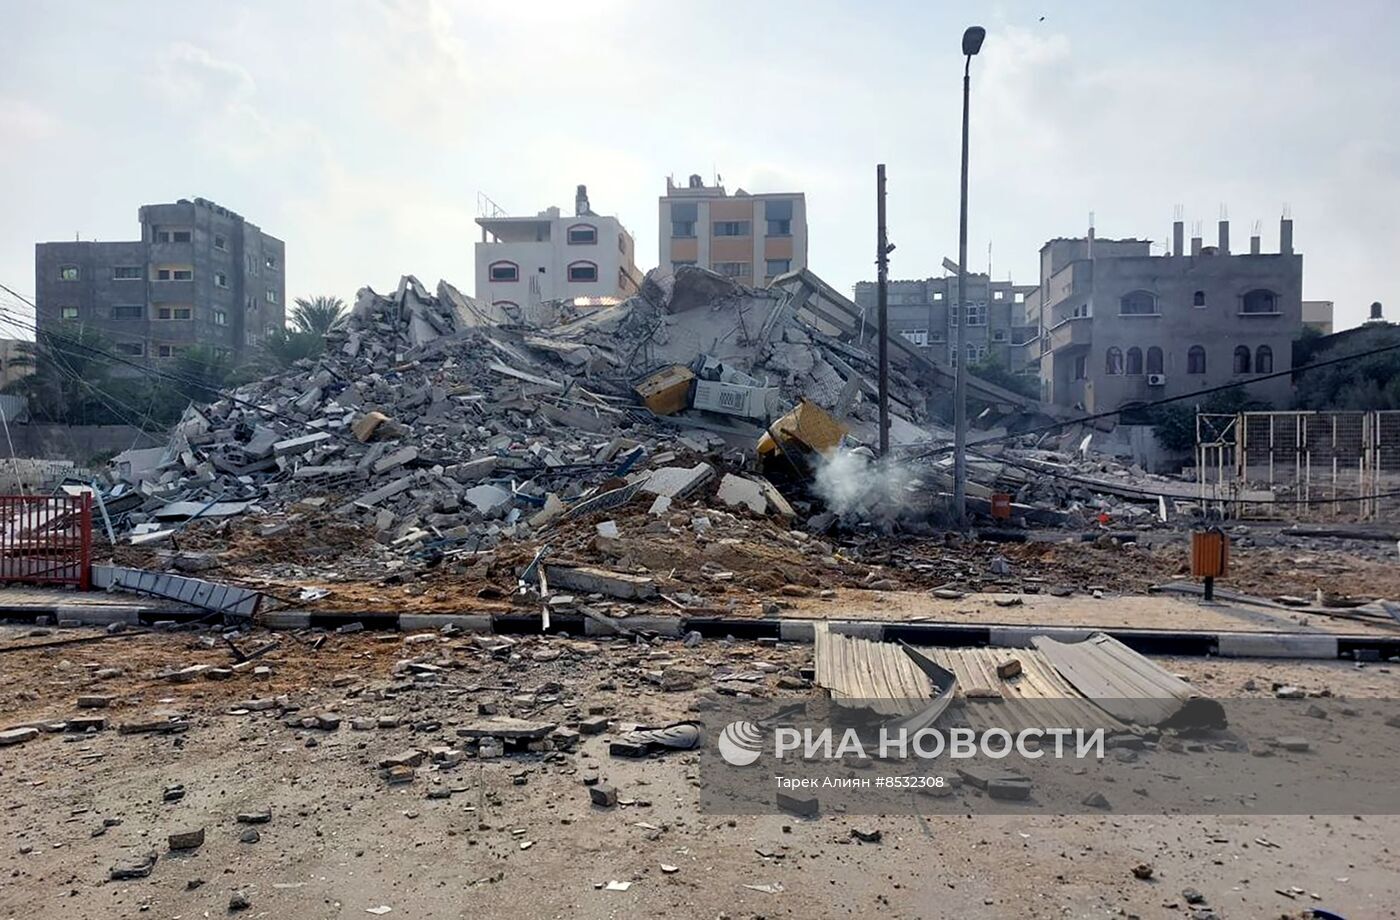 أنباء عن محادثات لتأمين خروج الأمريكيين والمدنيين الفلسطينيين من غزة لمصر قبل بدء إسرائيل عملية برية